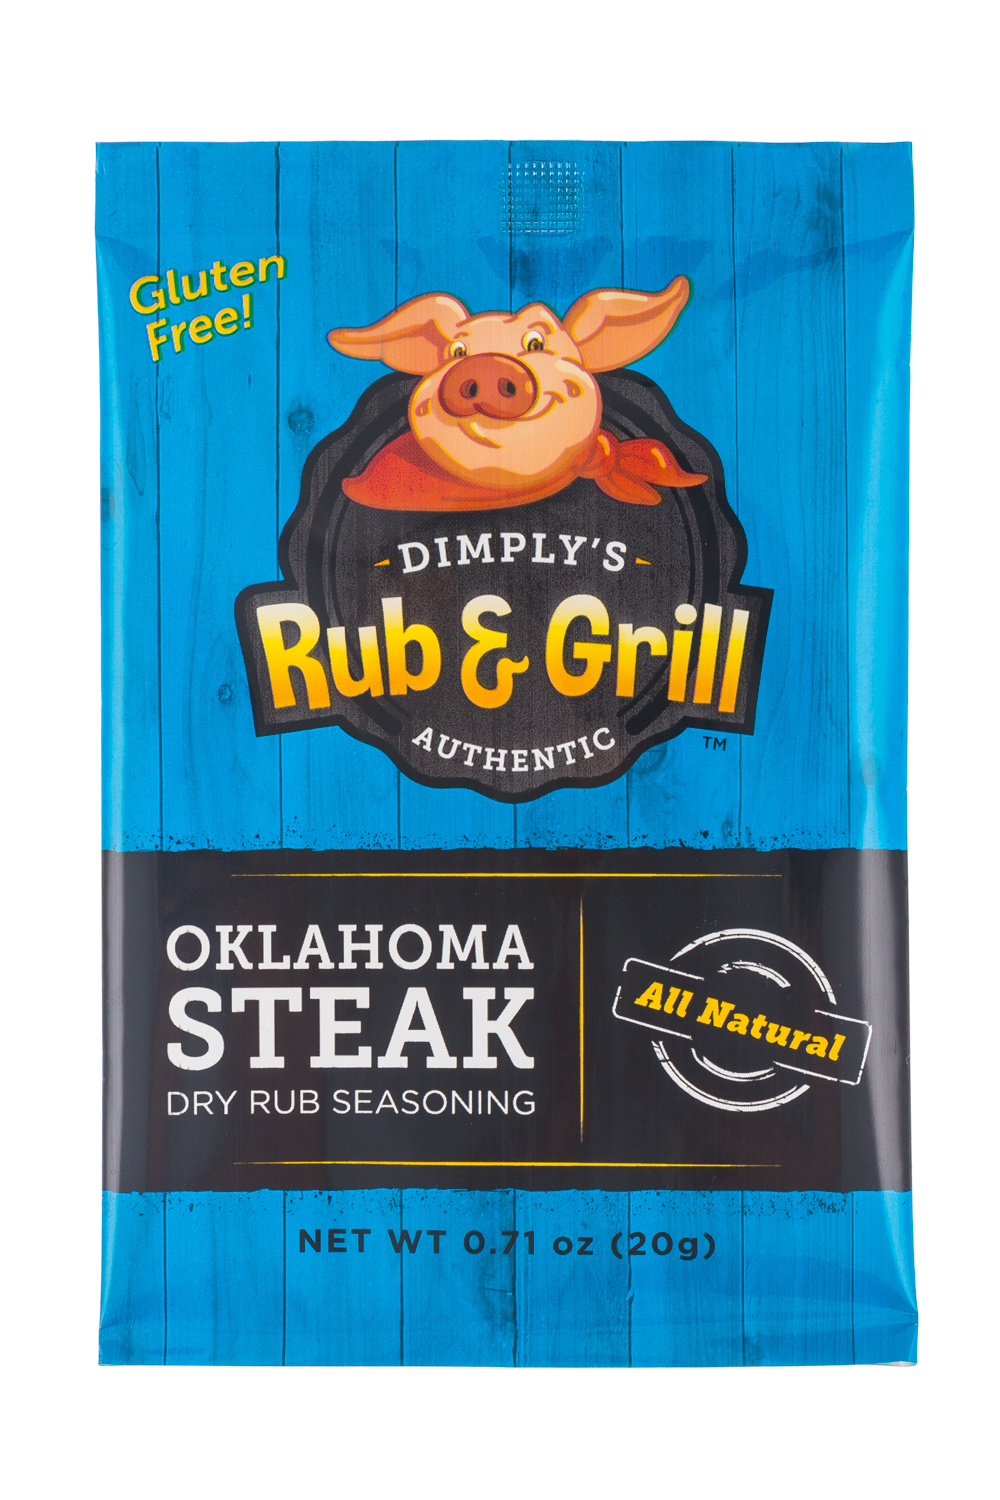 Oklahoma Steak